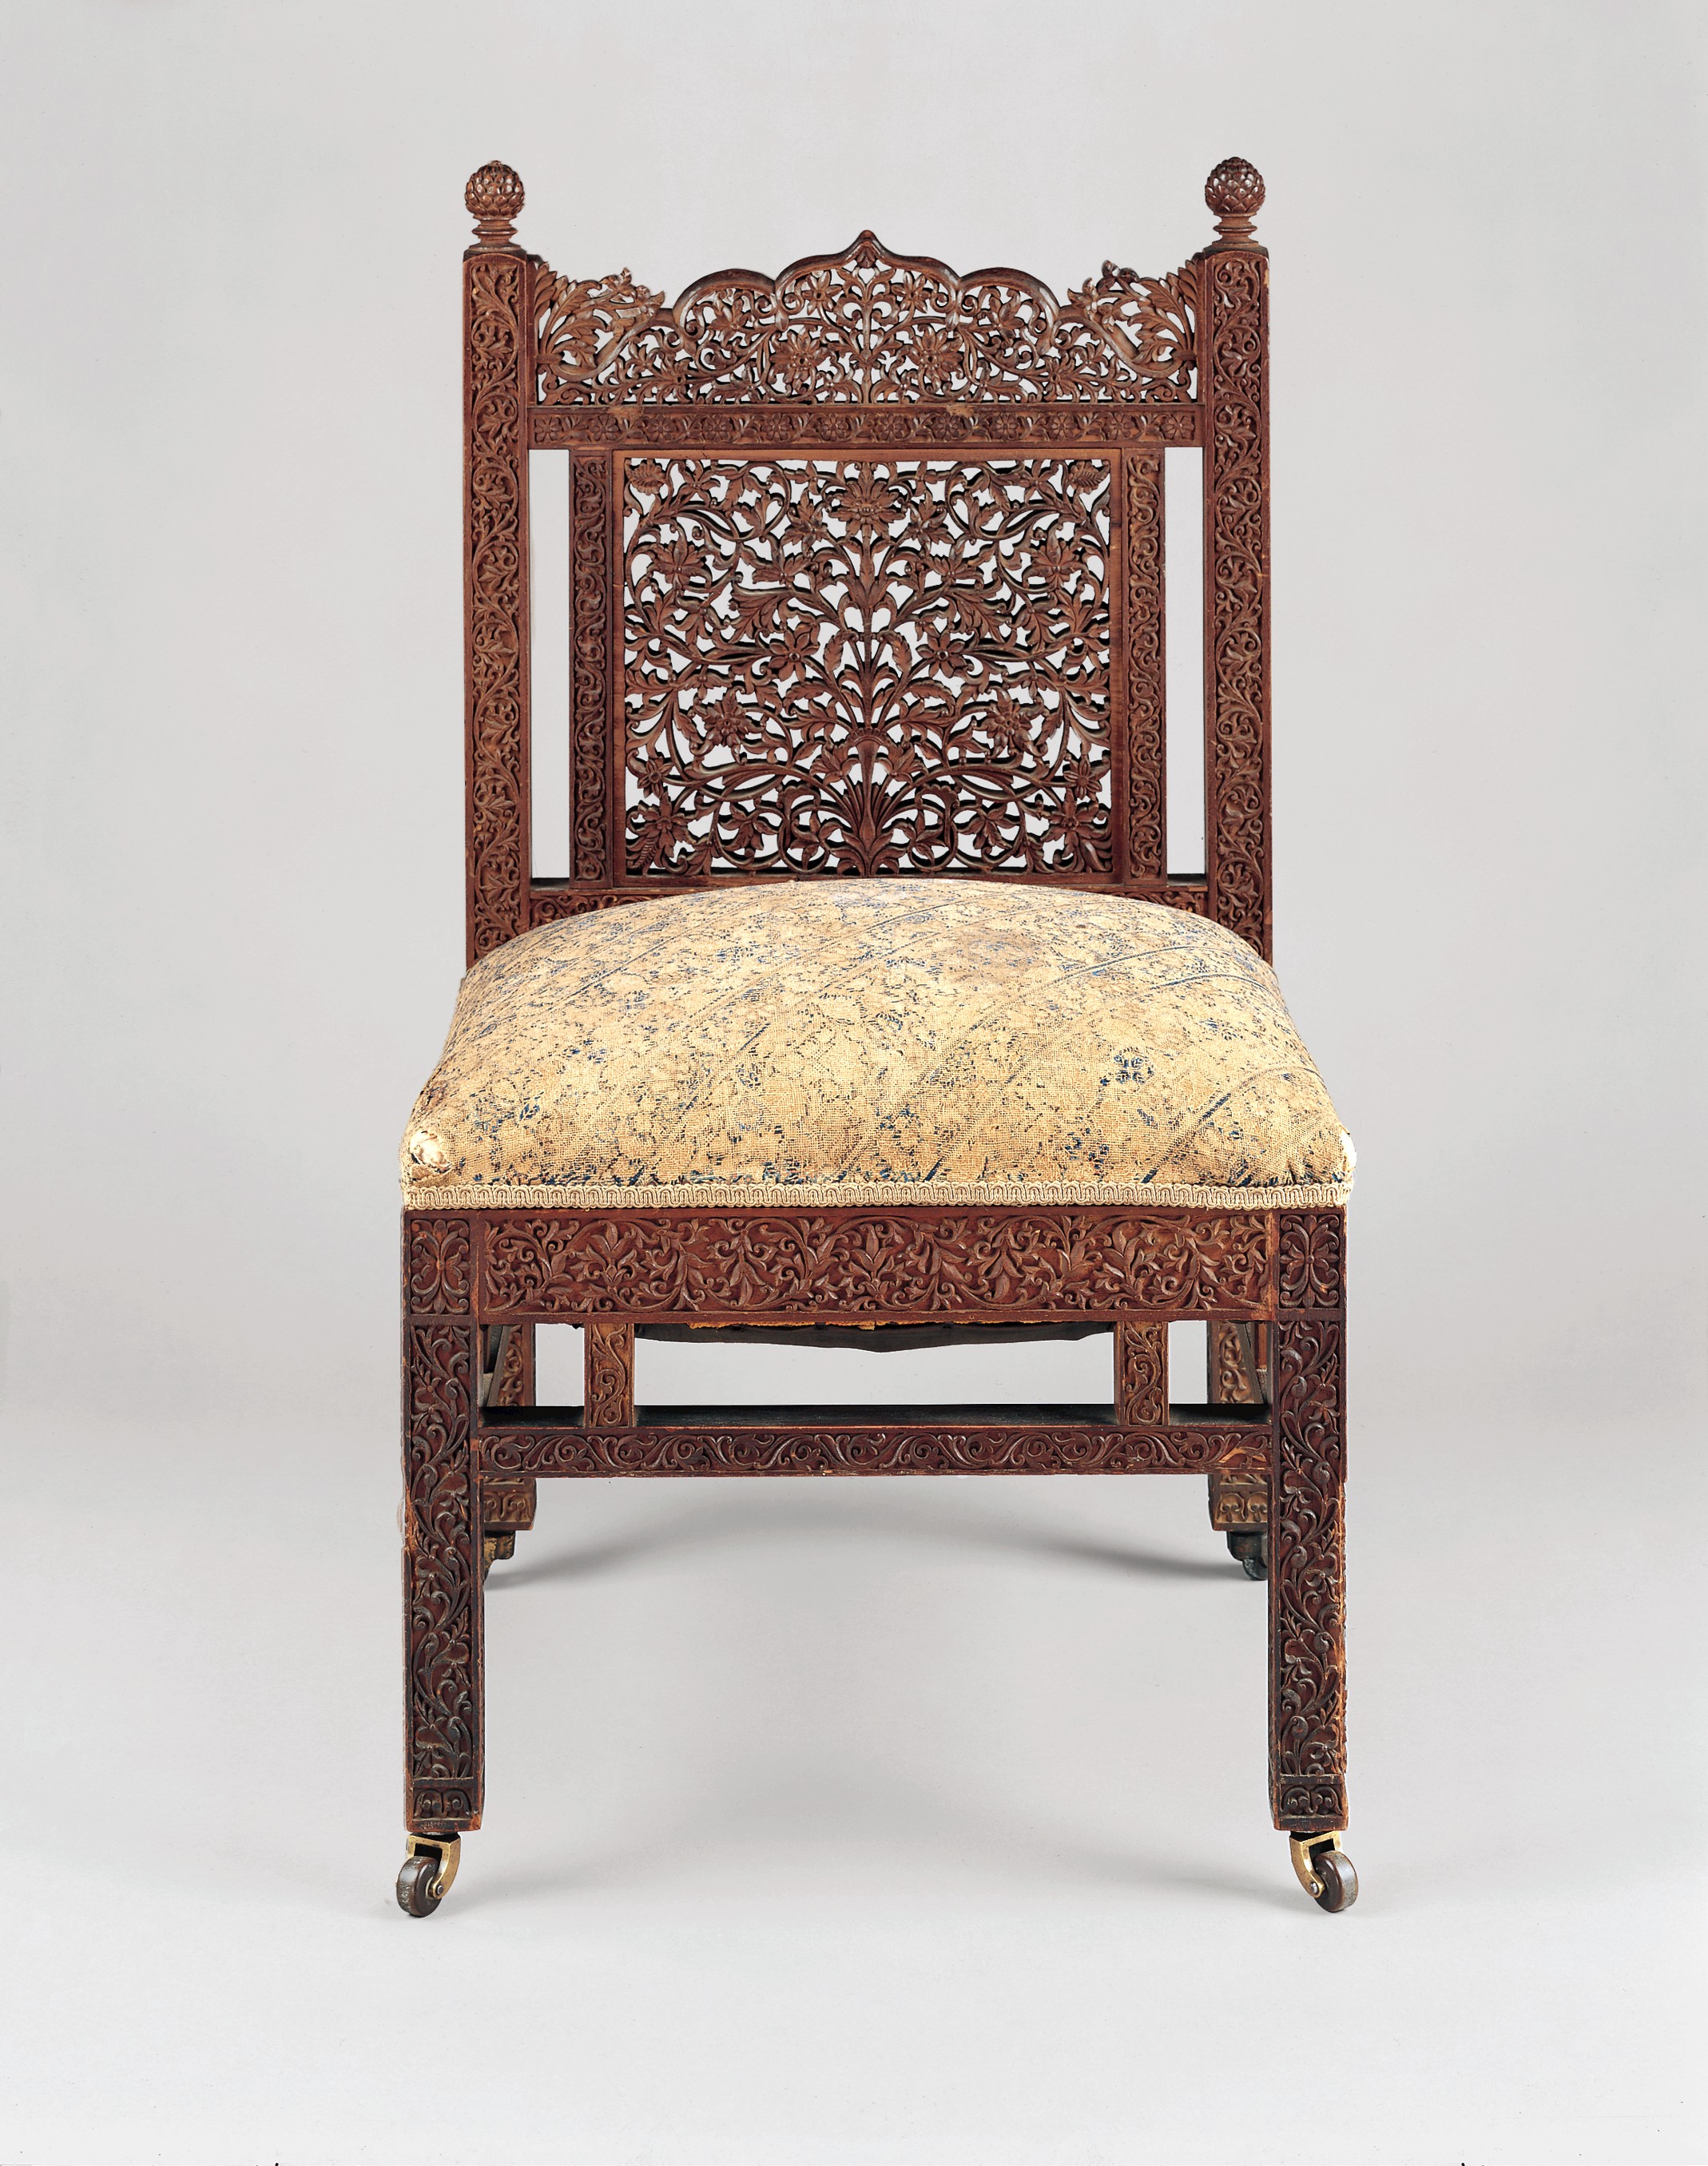 Κάθισμα by Lockwood de Forest - περί 1881-6 - 82.2 x 46.4 x 47 cm 